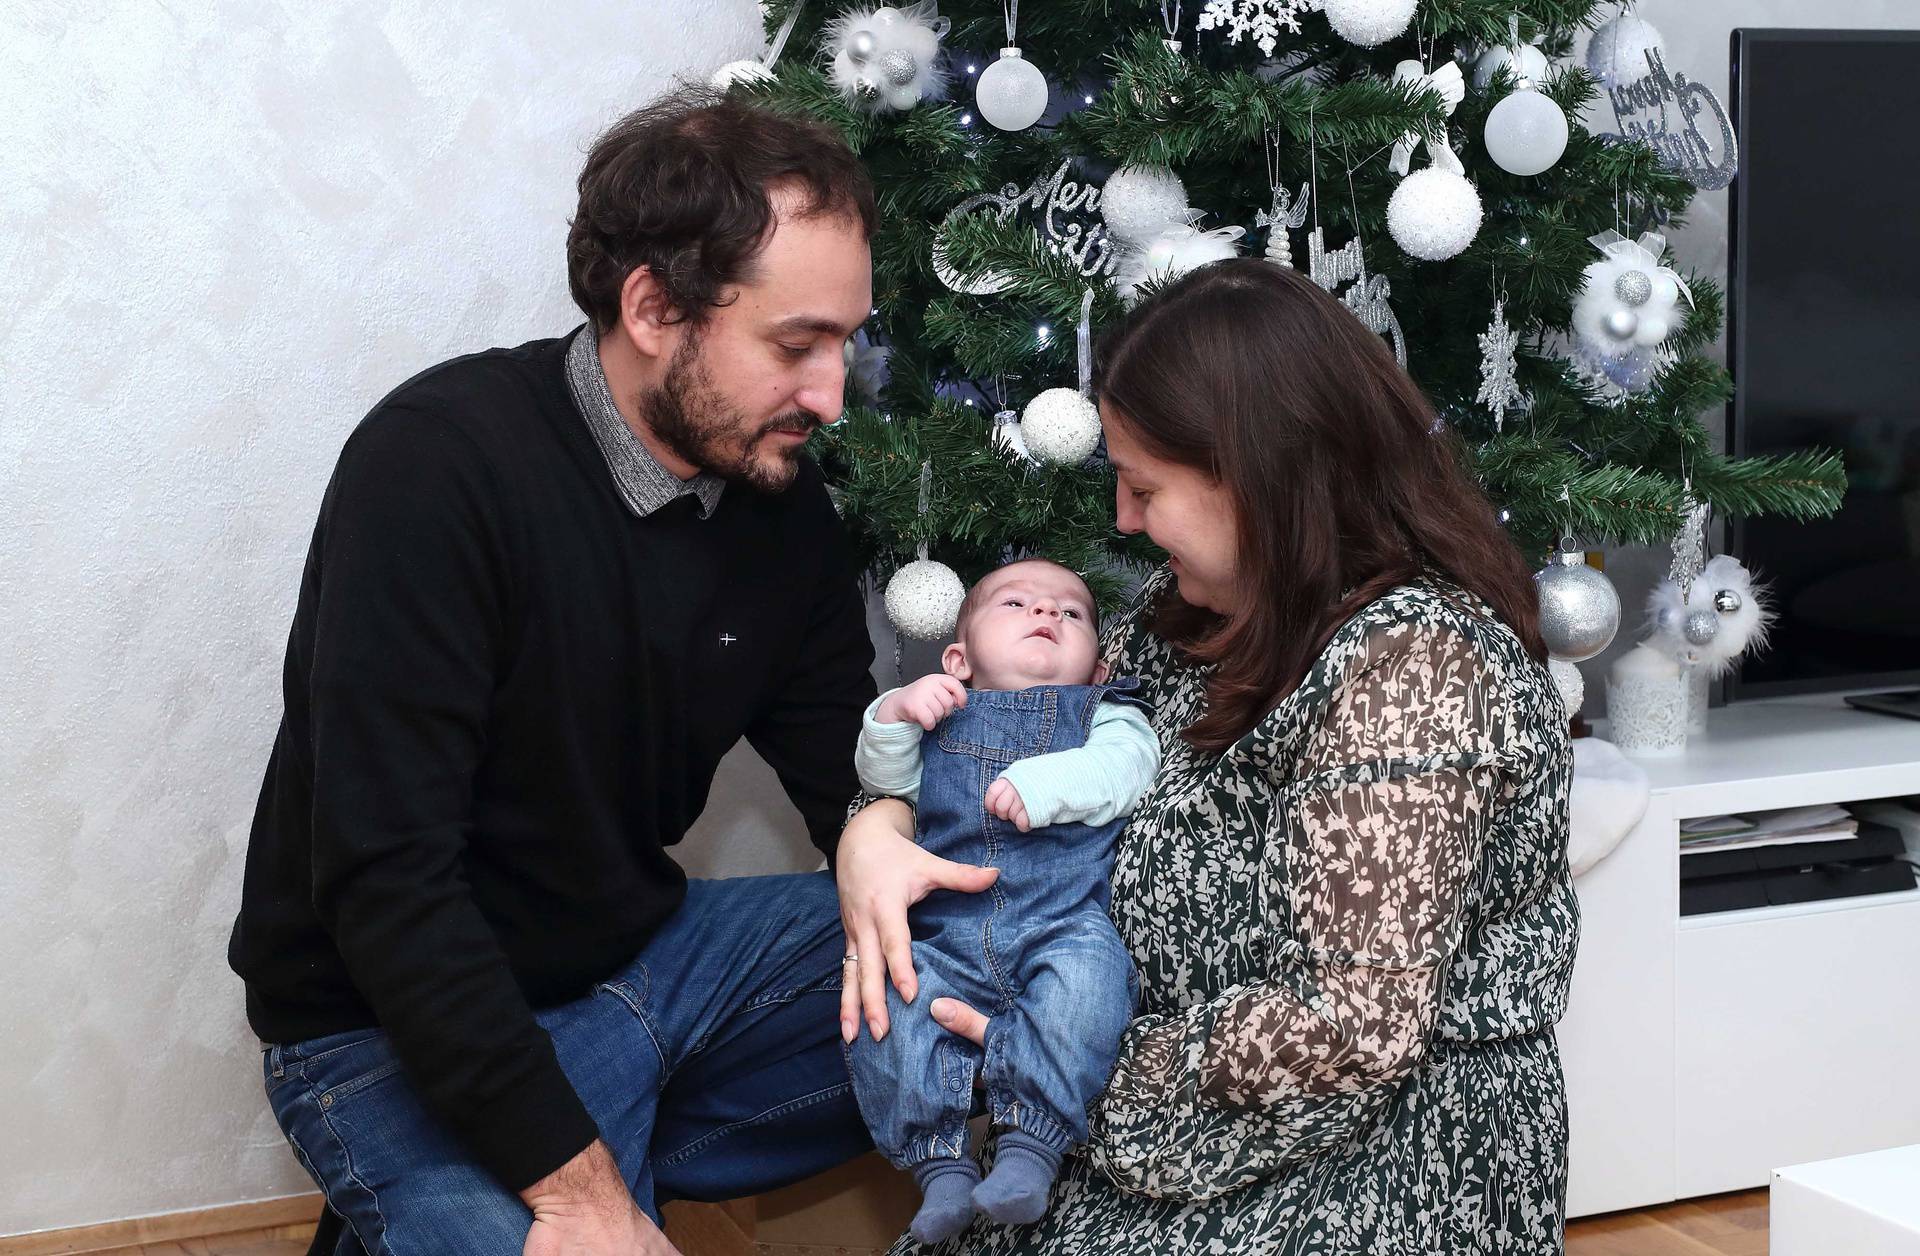 Mali Jona je konačno doma za Božić s mamom i tatom: 'Ovo je za nas poput najljepše bajke'